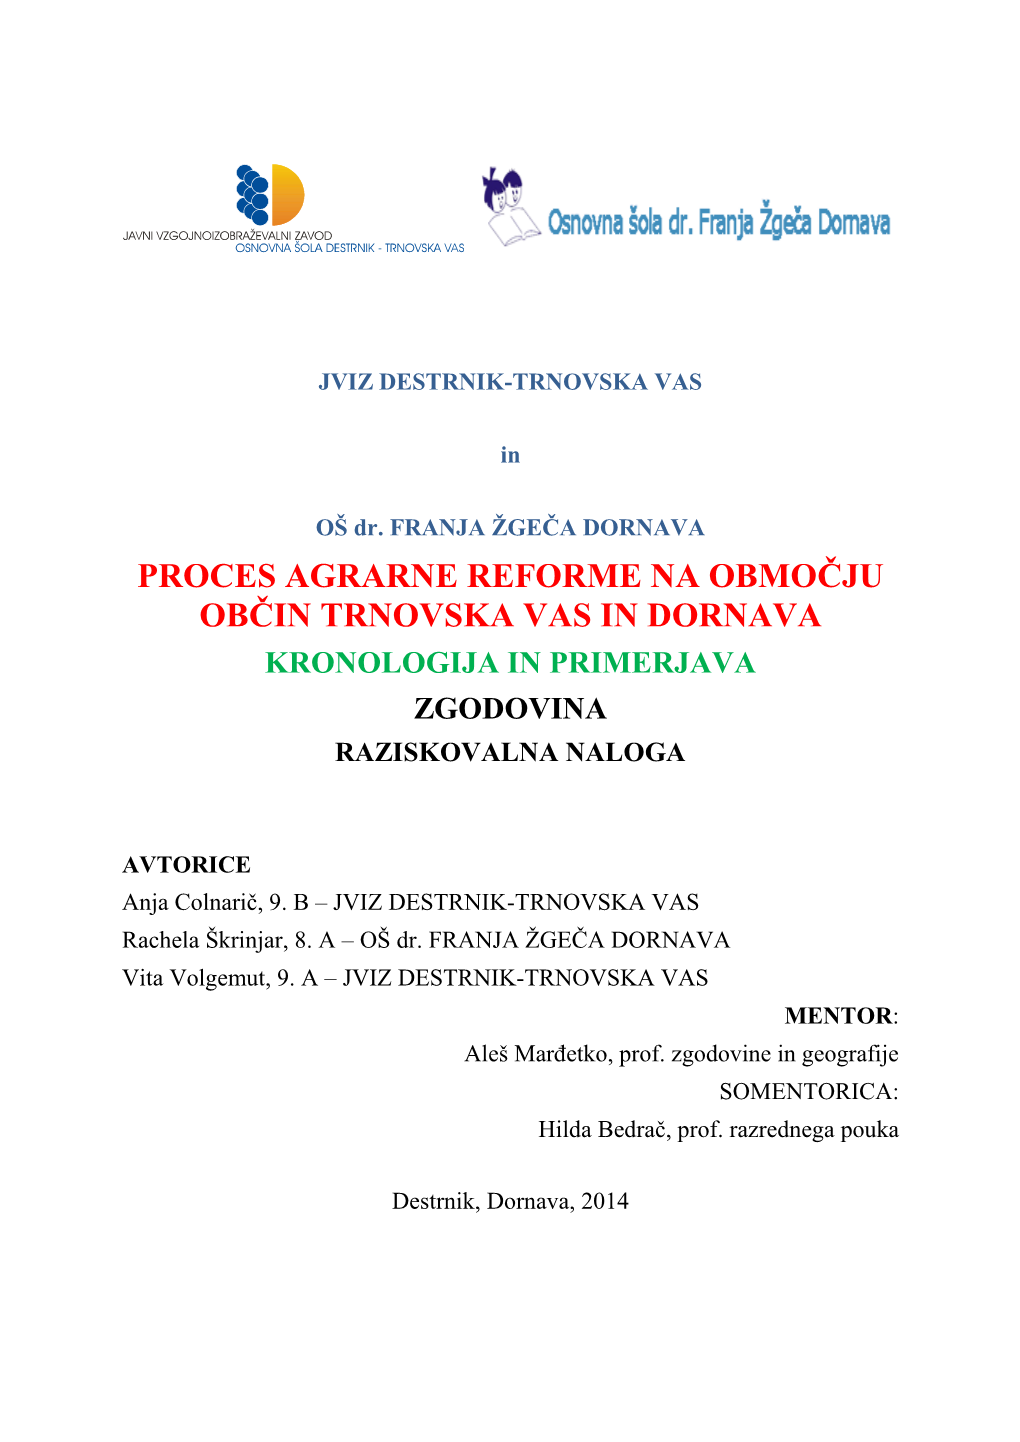 Proces Agrarne Reforme Na Območju Občin Trnovska Vas in Dornava Kronologija in Primerjava Zgodovina Raziskovalna Naloga